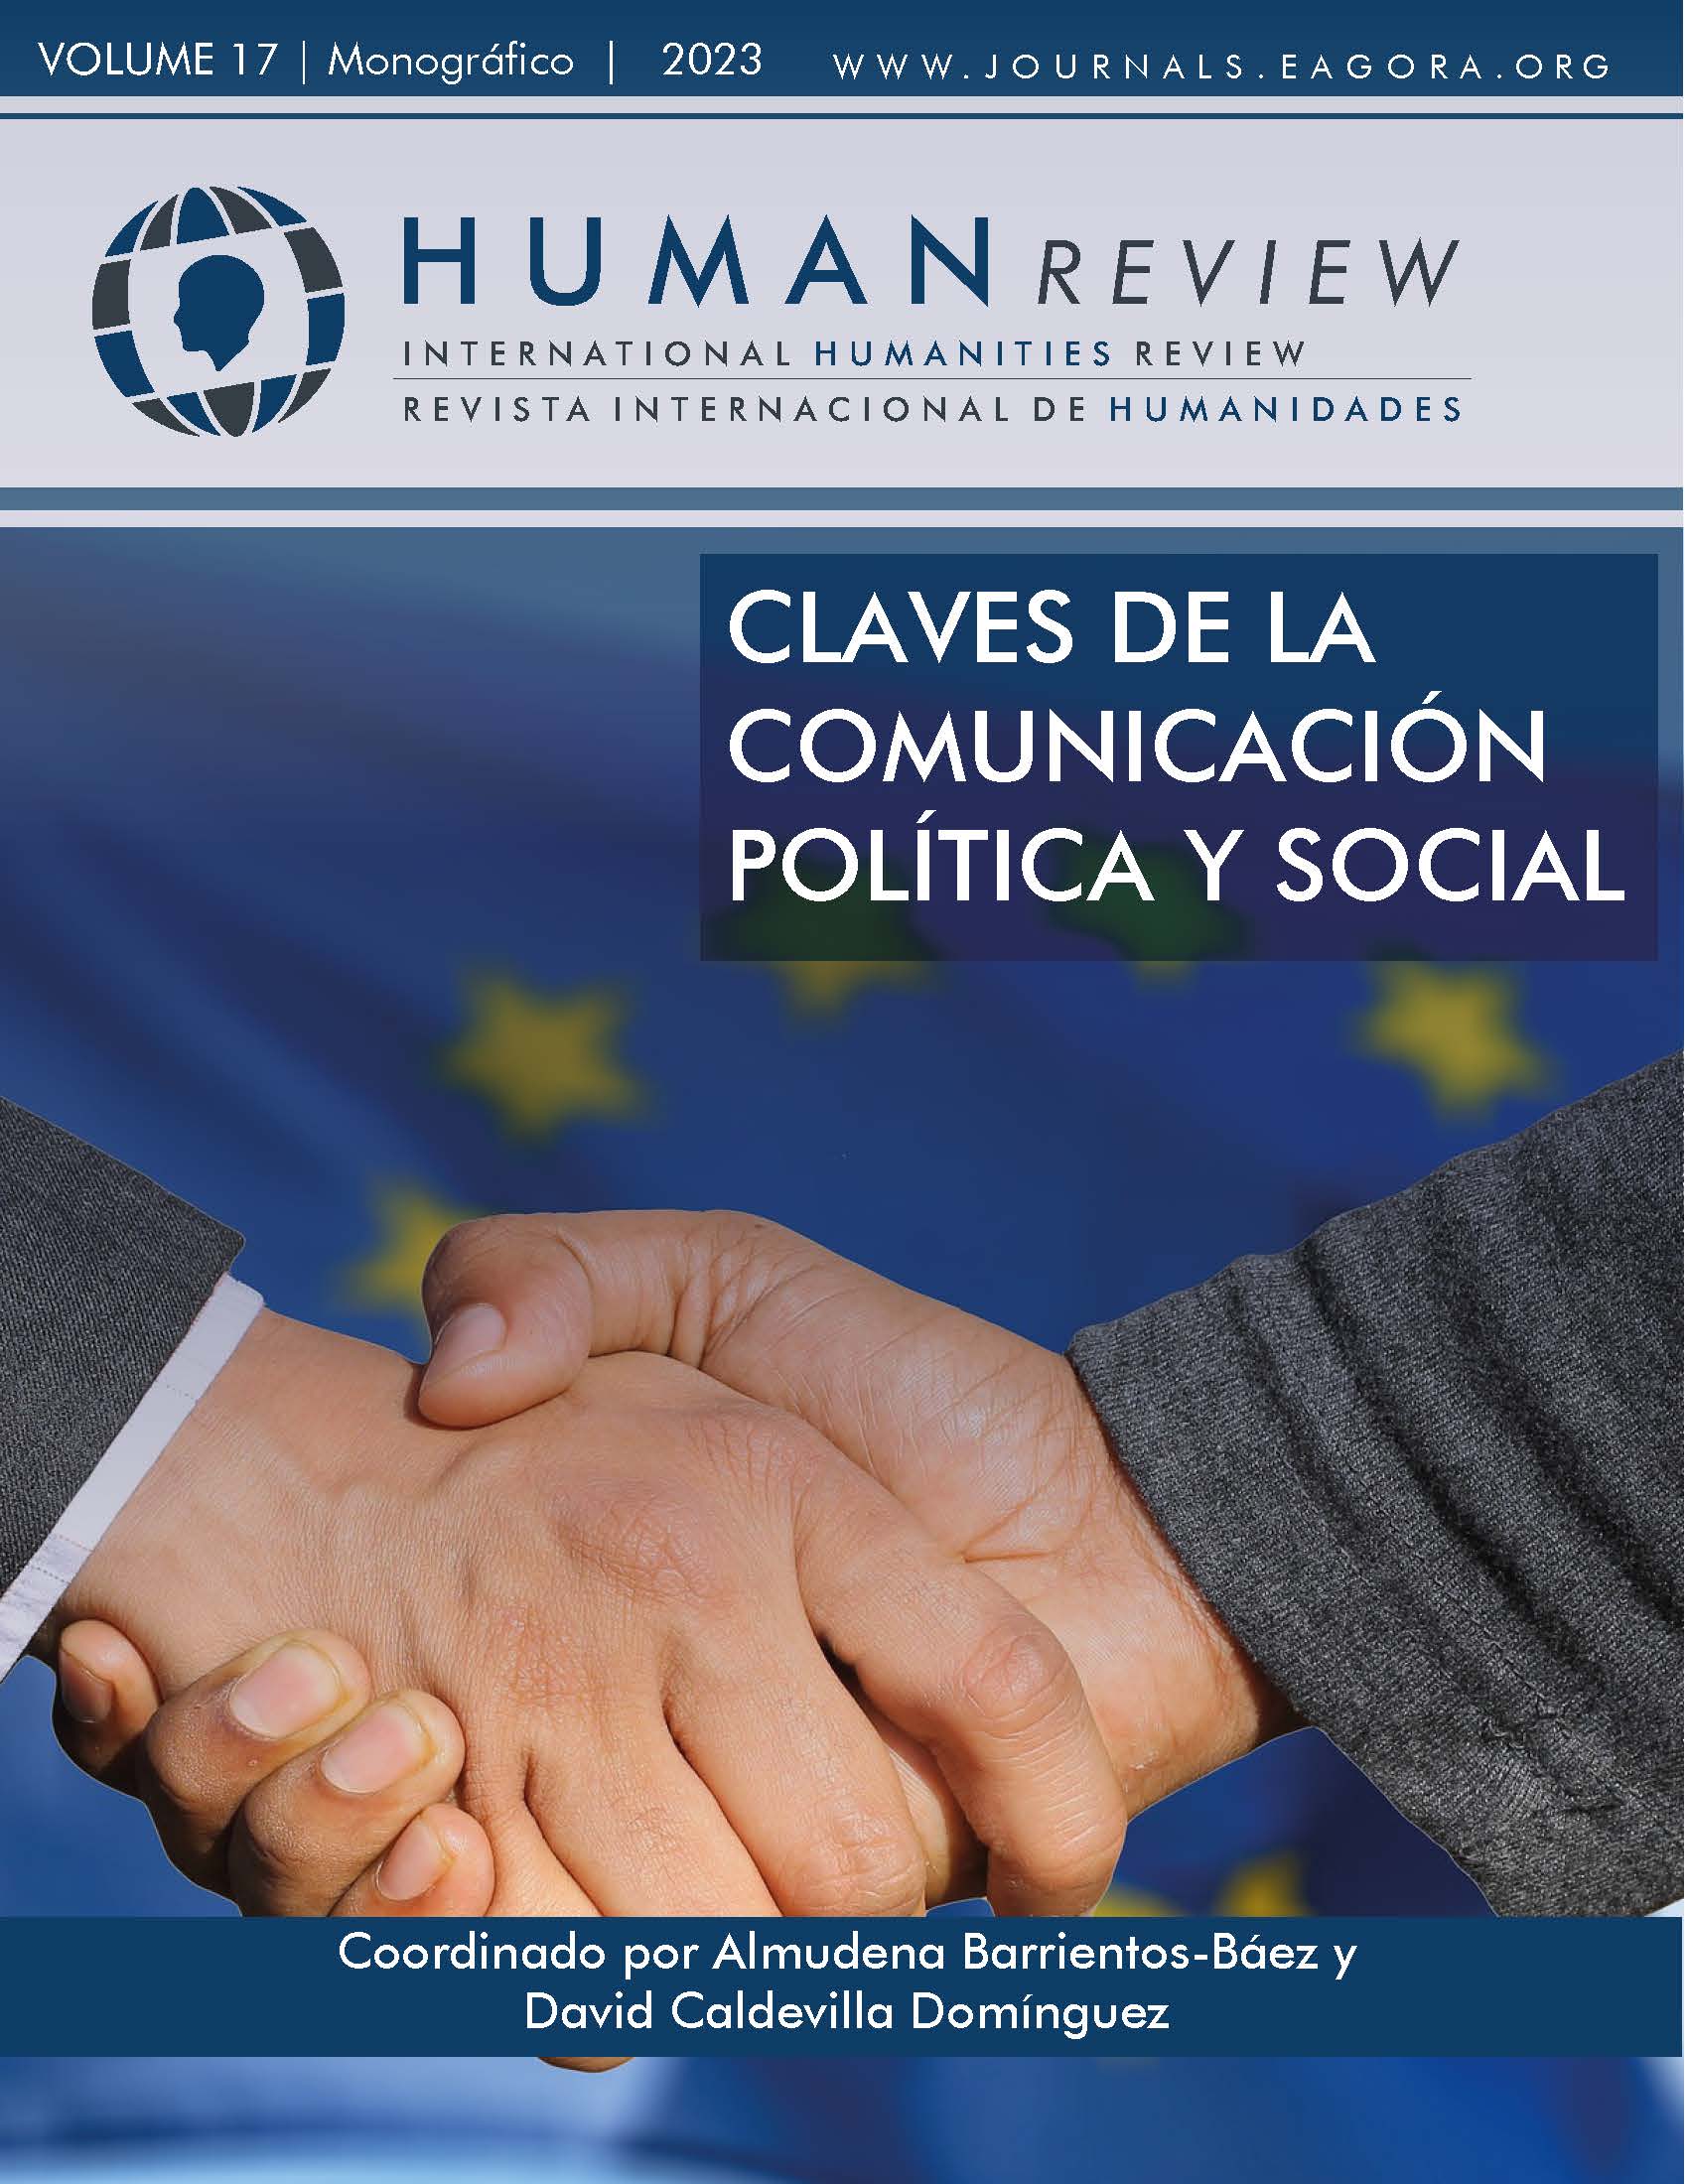 					Ver Vol. 17 Núm. 6 (2023): Monográfico: "Claves de la comunicación política y social"
				